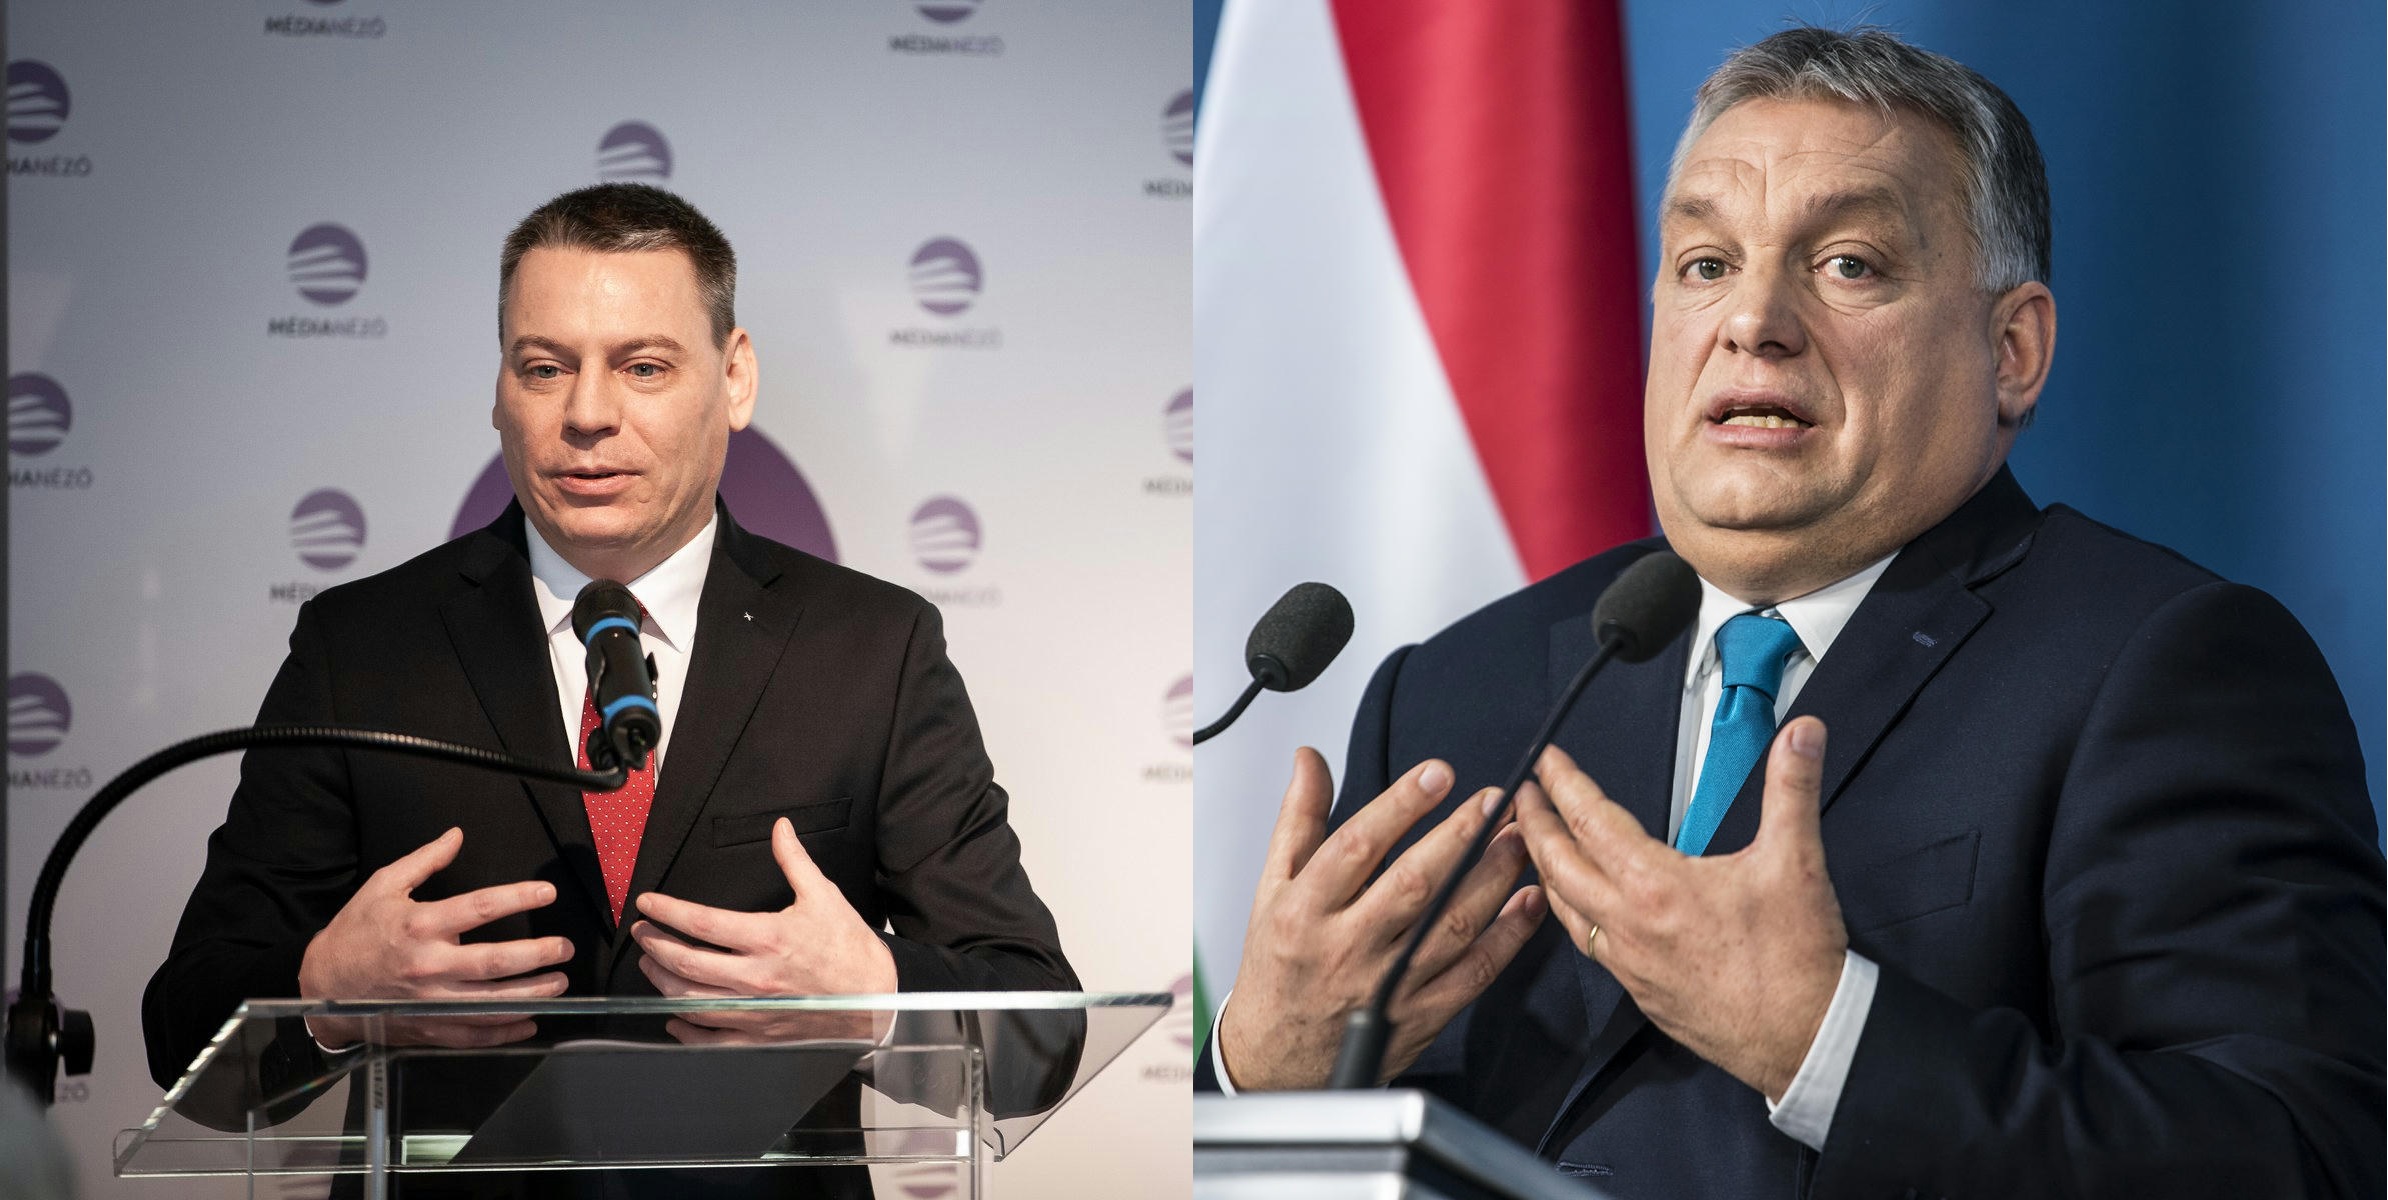 Az ember, aki addig követte Orbánt, hogy ő maga is az lett